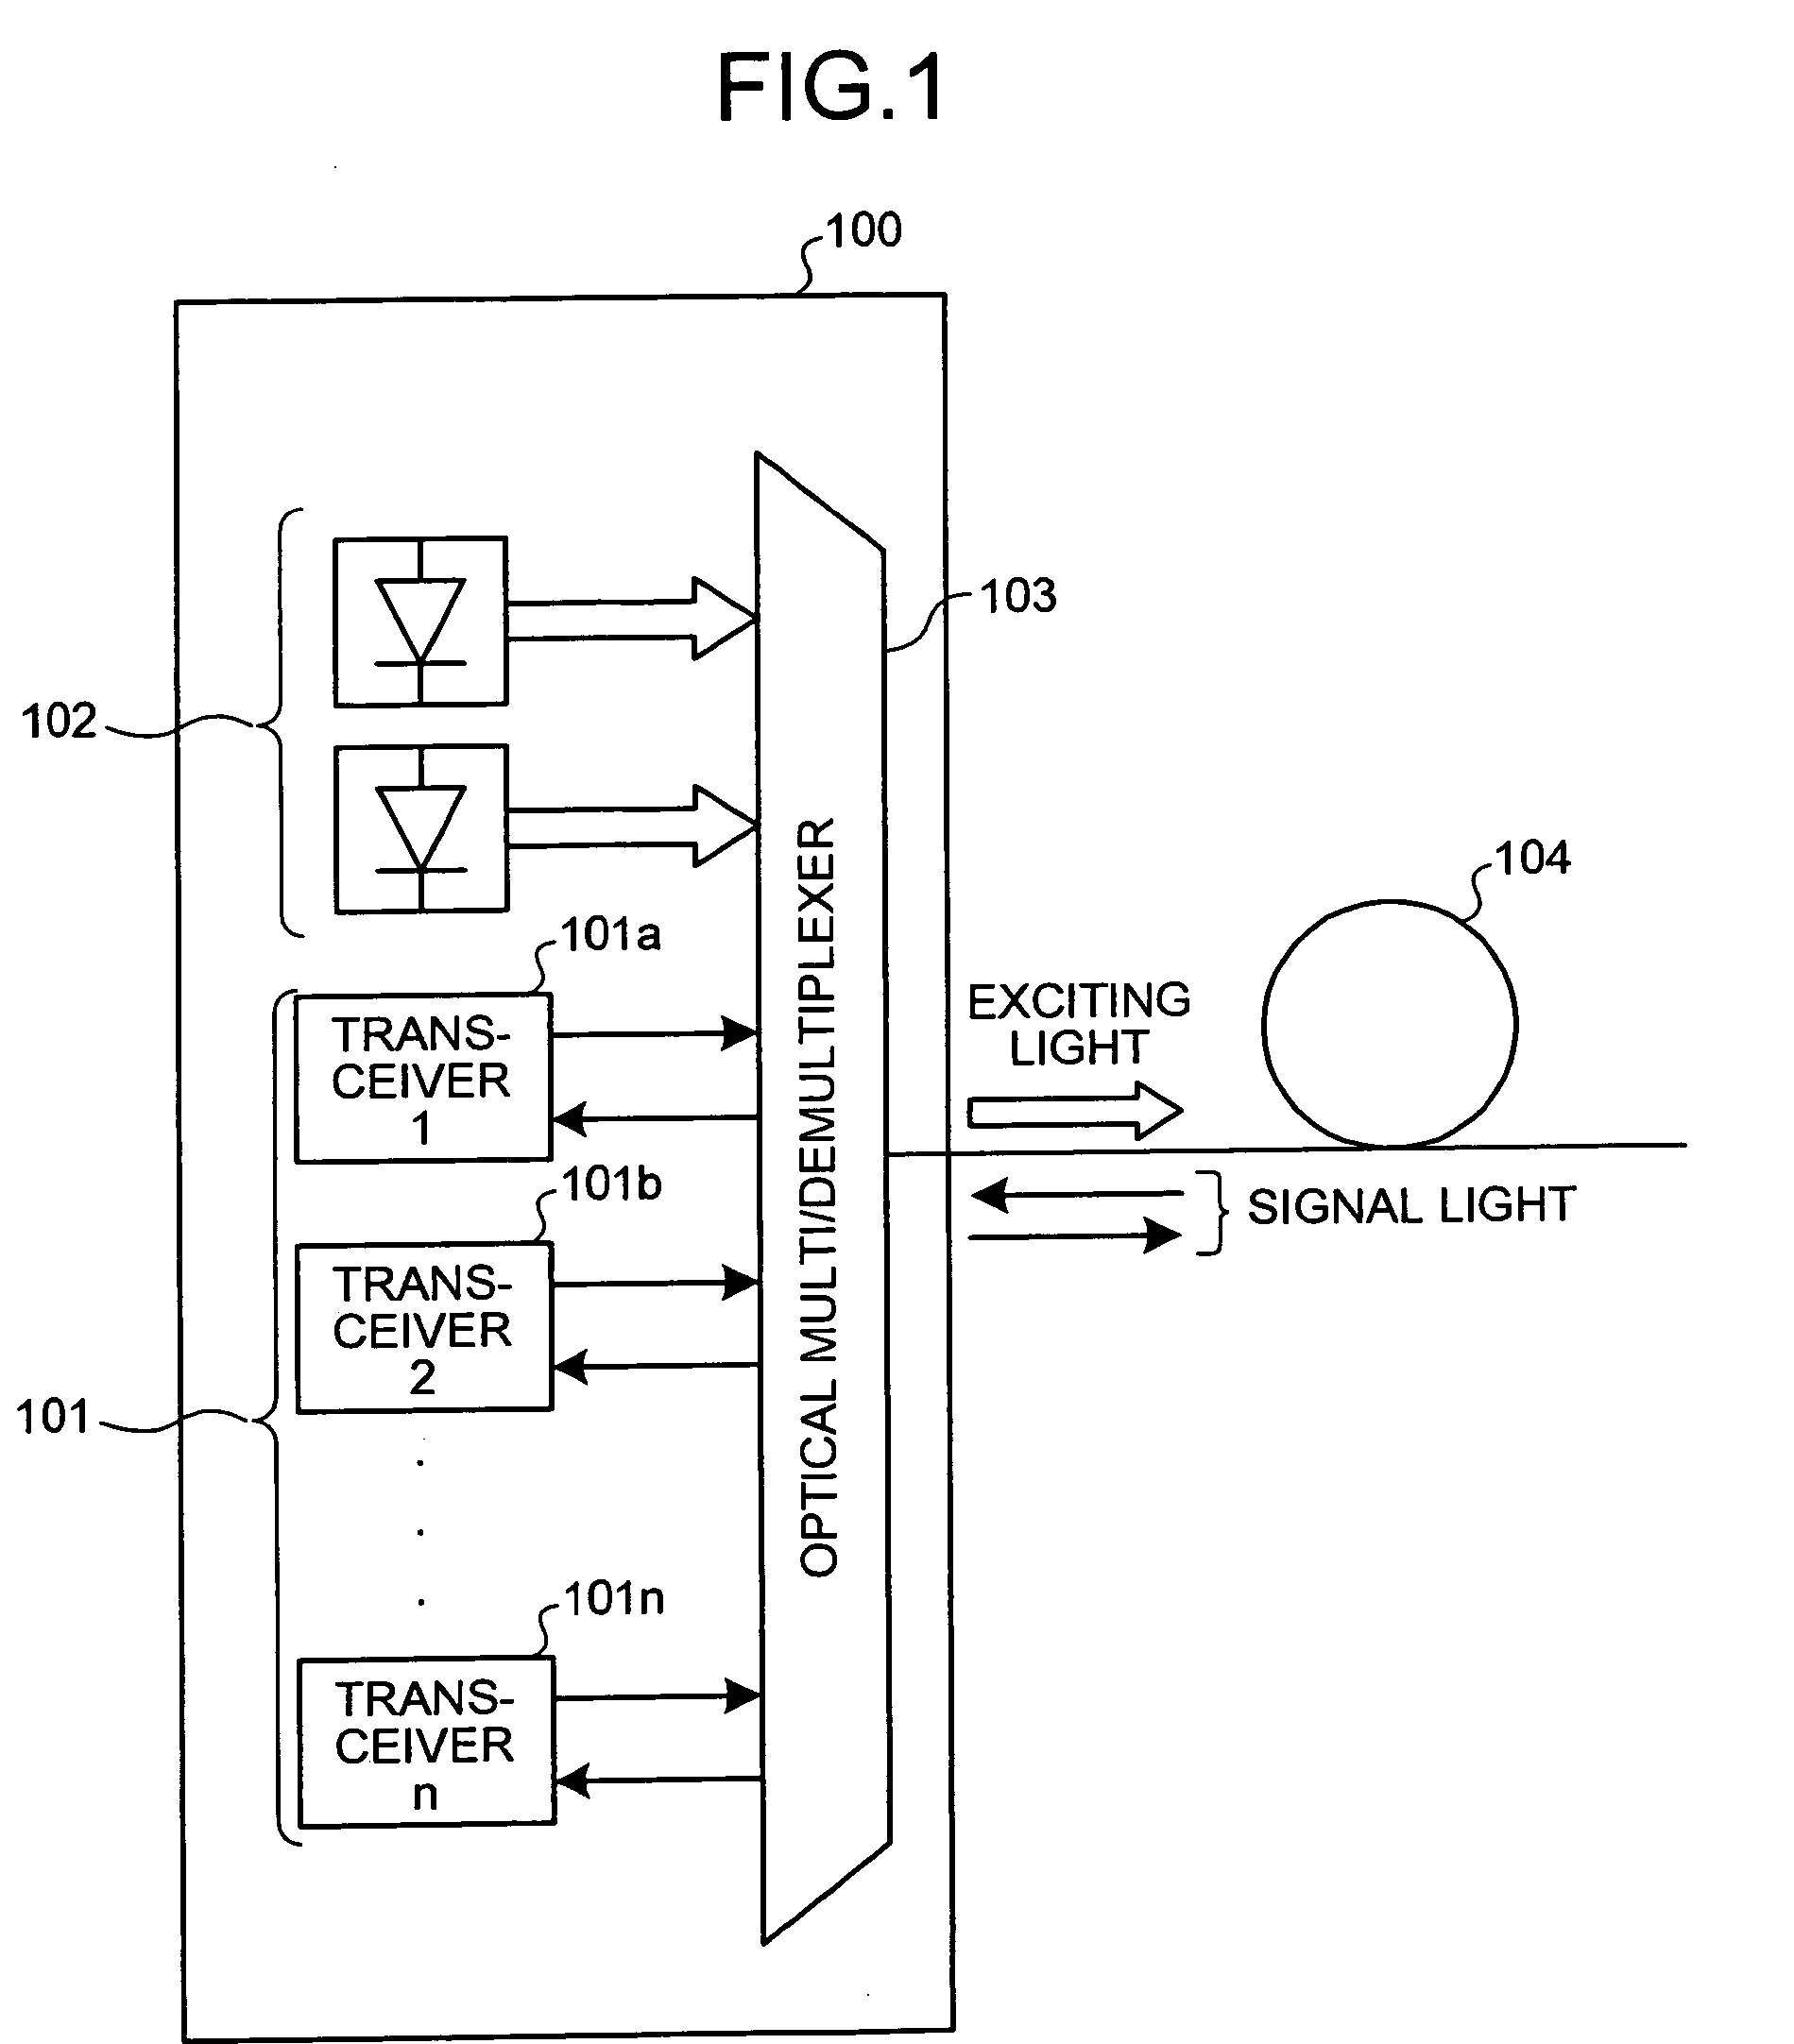 Optical terminal apparatus